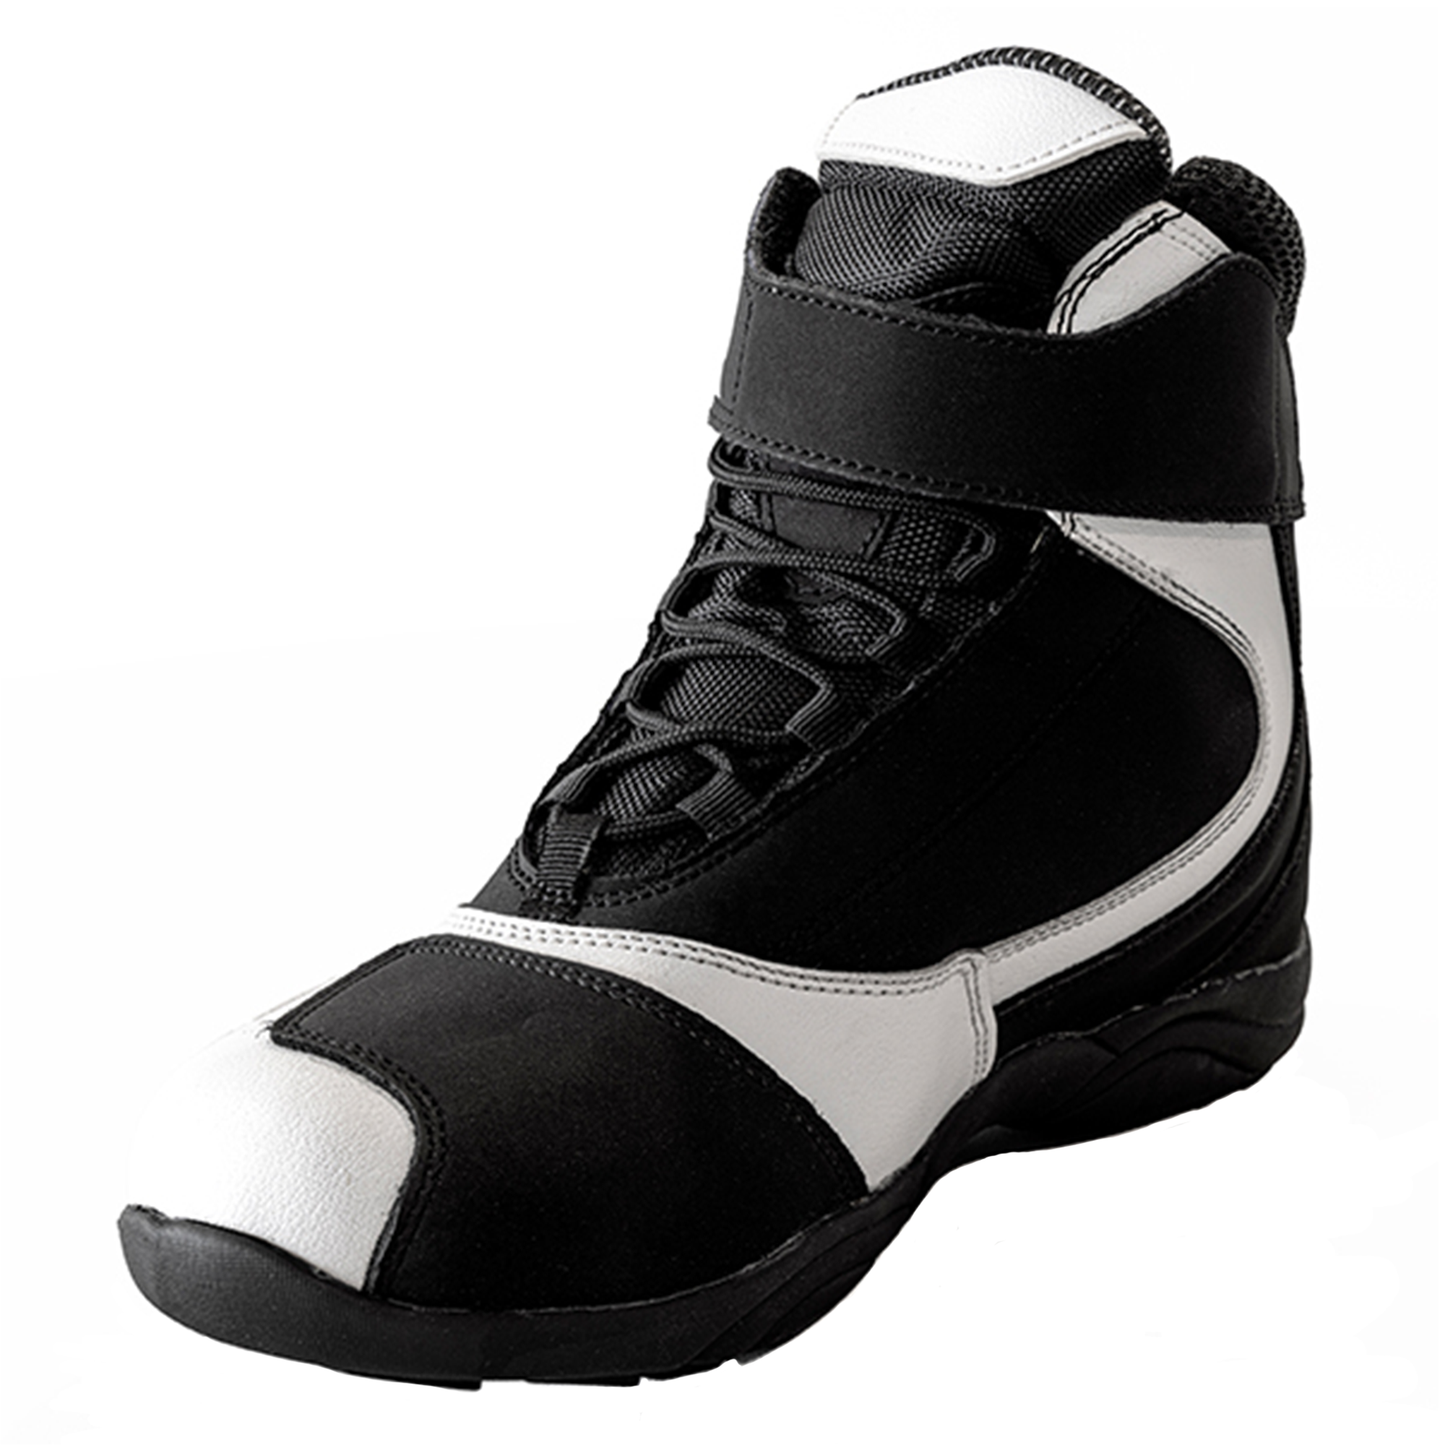 Richa Slick Boots - Black/White